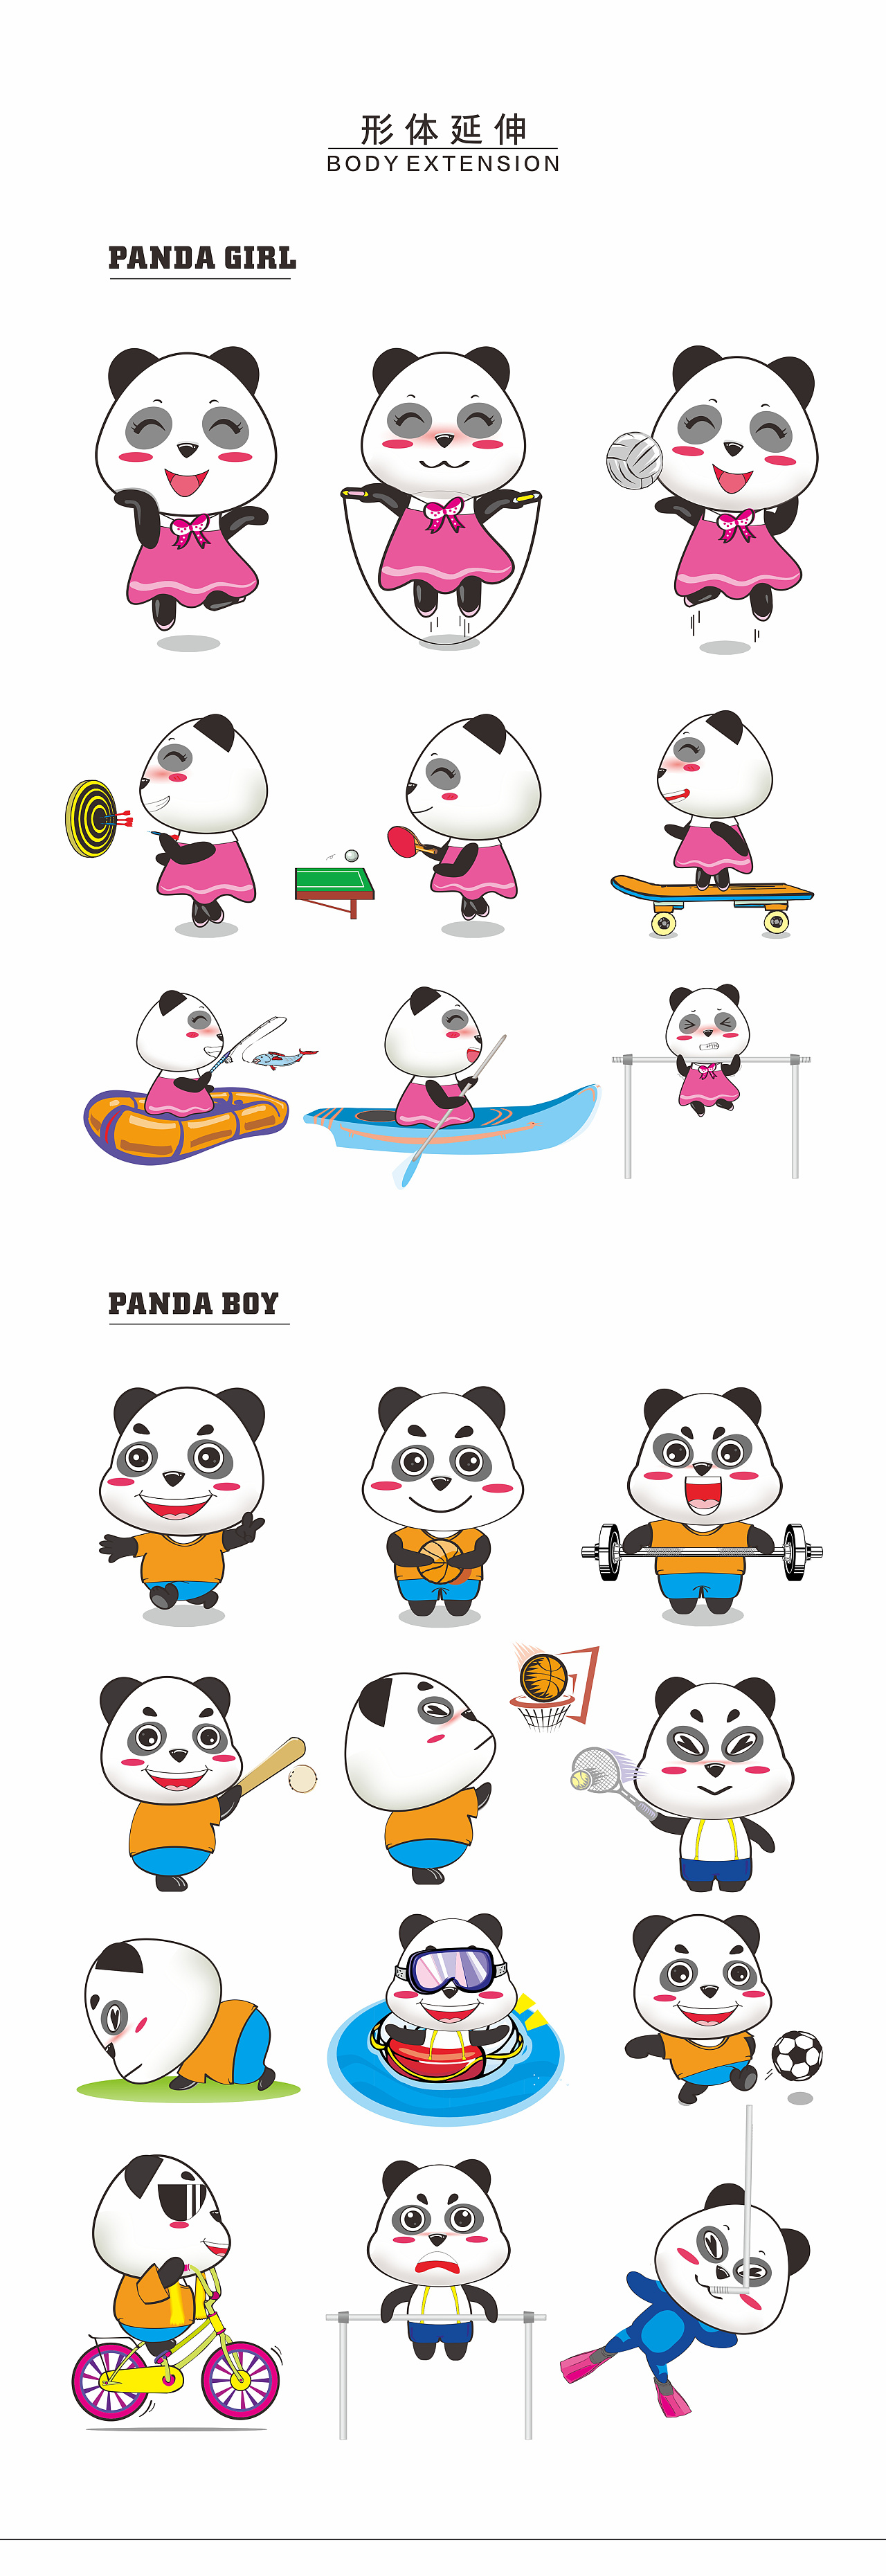 大熊猫资料简介动漫图片